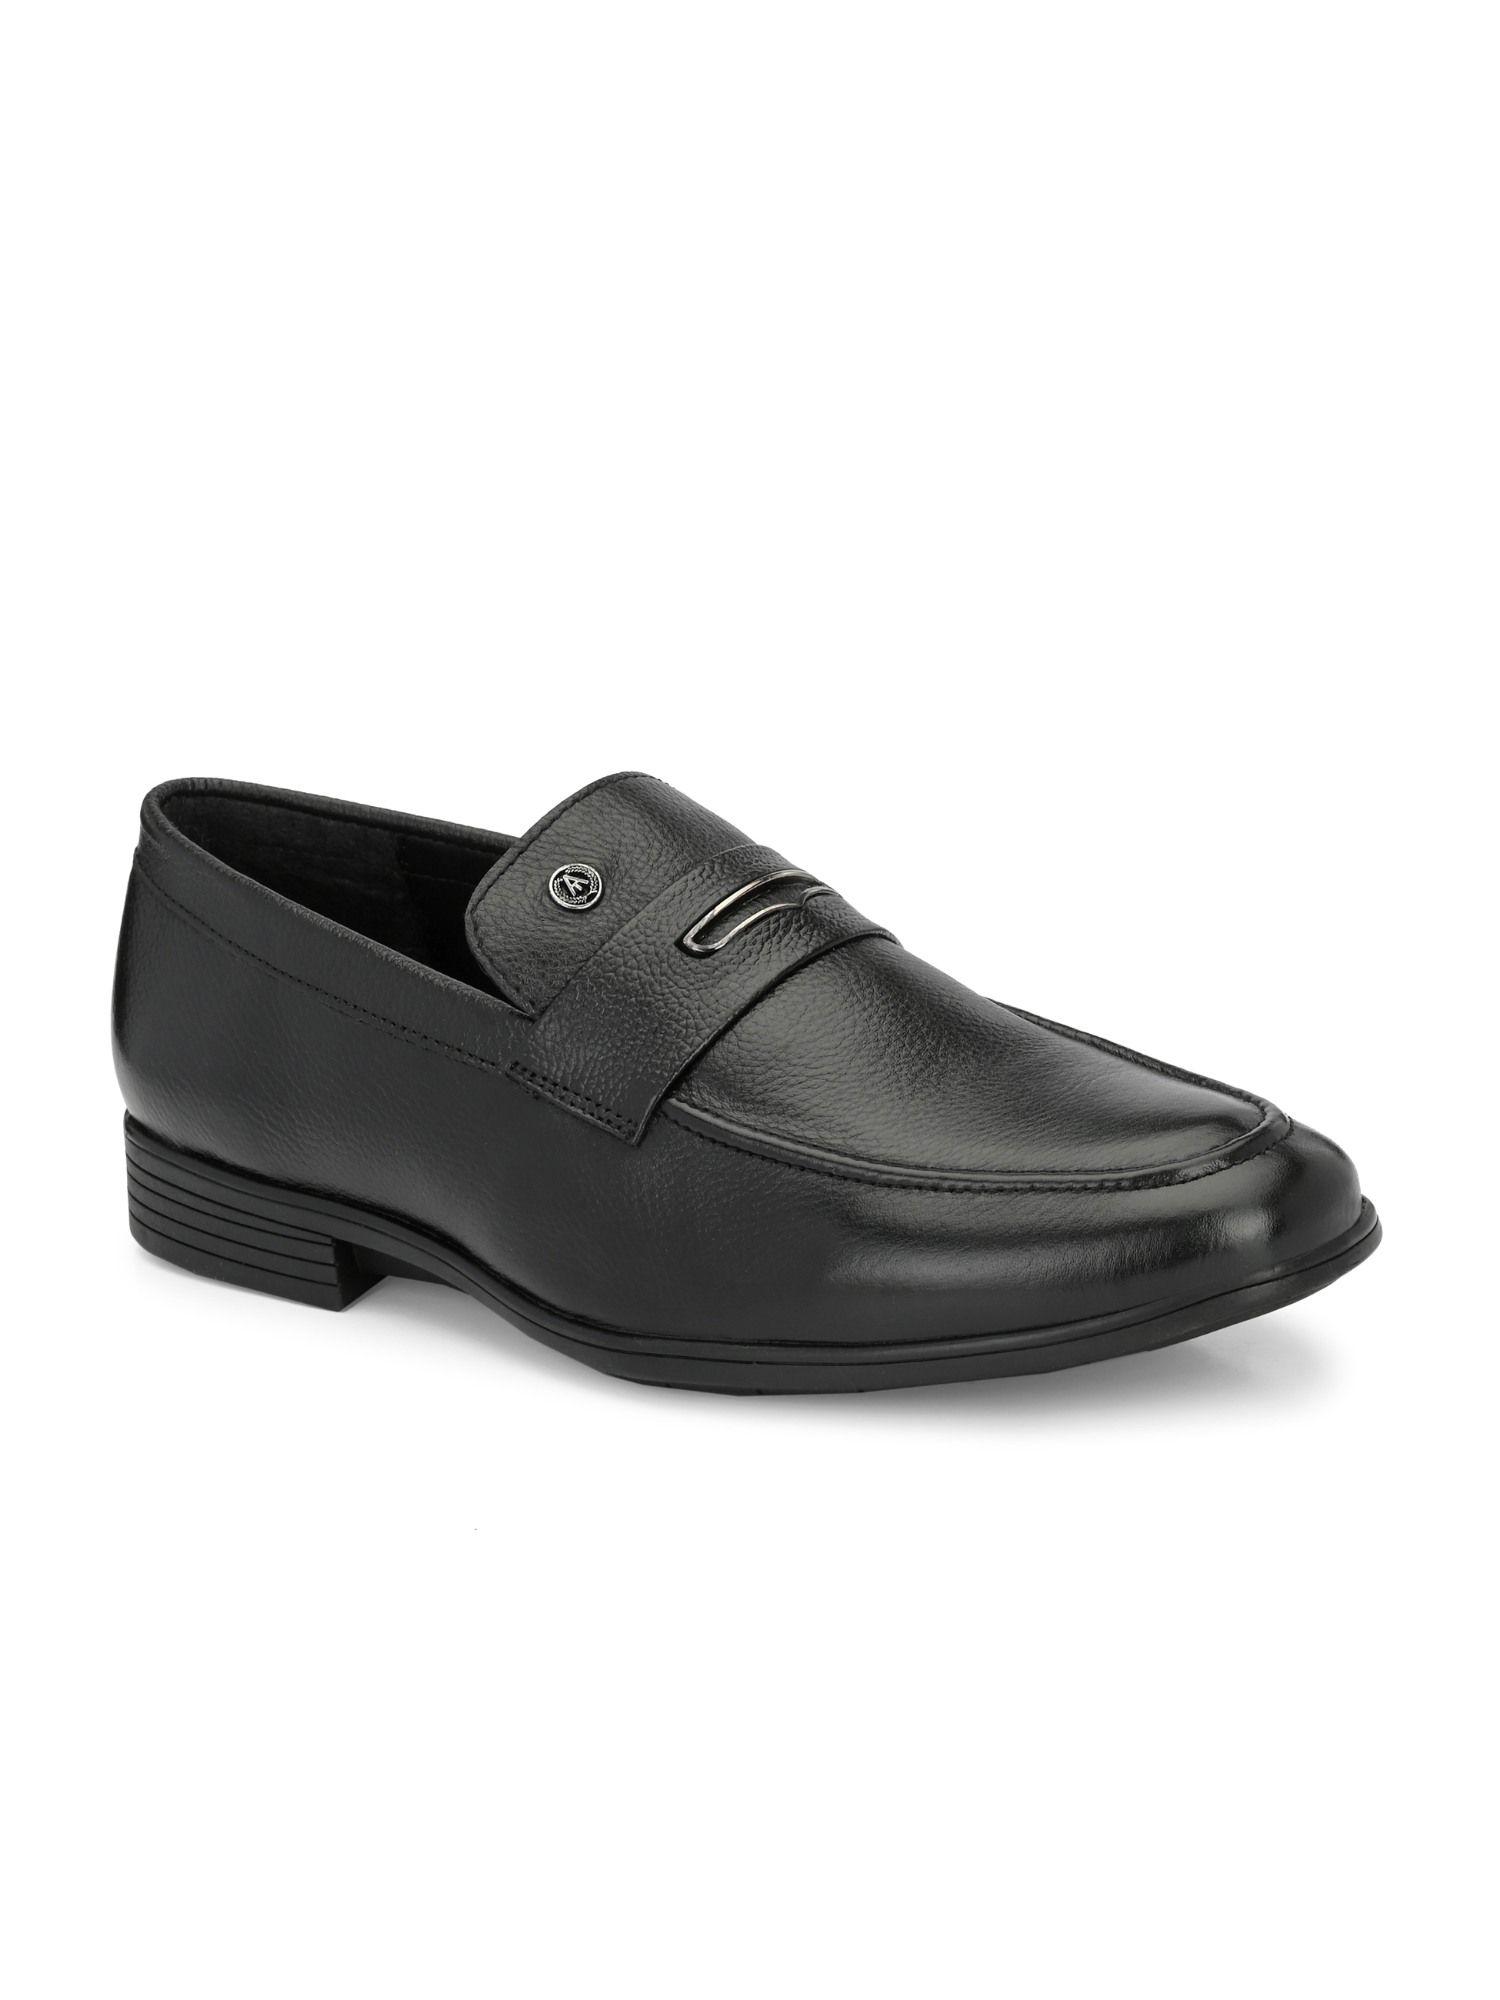 solid genuine leather black slip on formal shoes for men